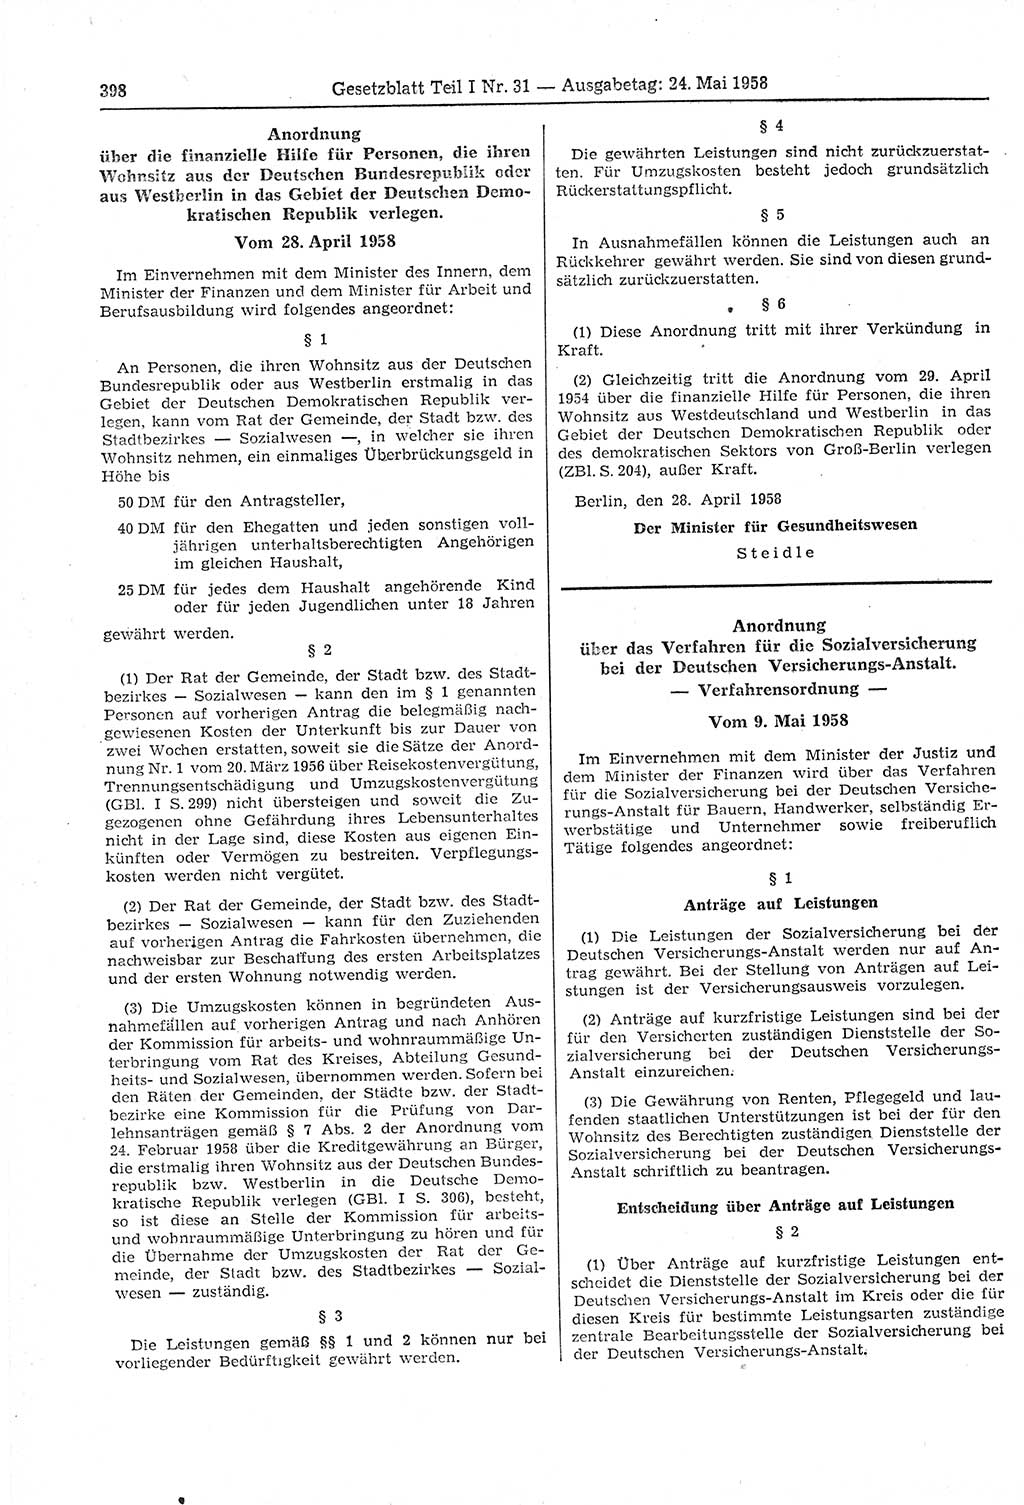 Gesetzblatt (GBl.) der Deutschen Demokratischen Republik (DDR) Teil Ⅰ 1958, Seite 398 (GBl. DDR Ⅰ 1958, S. 398)